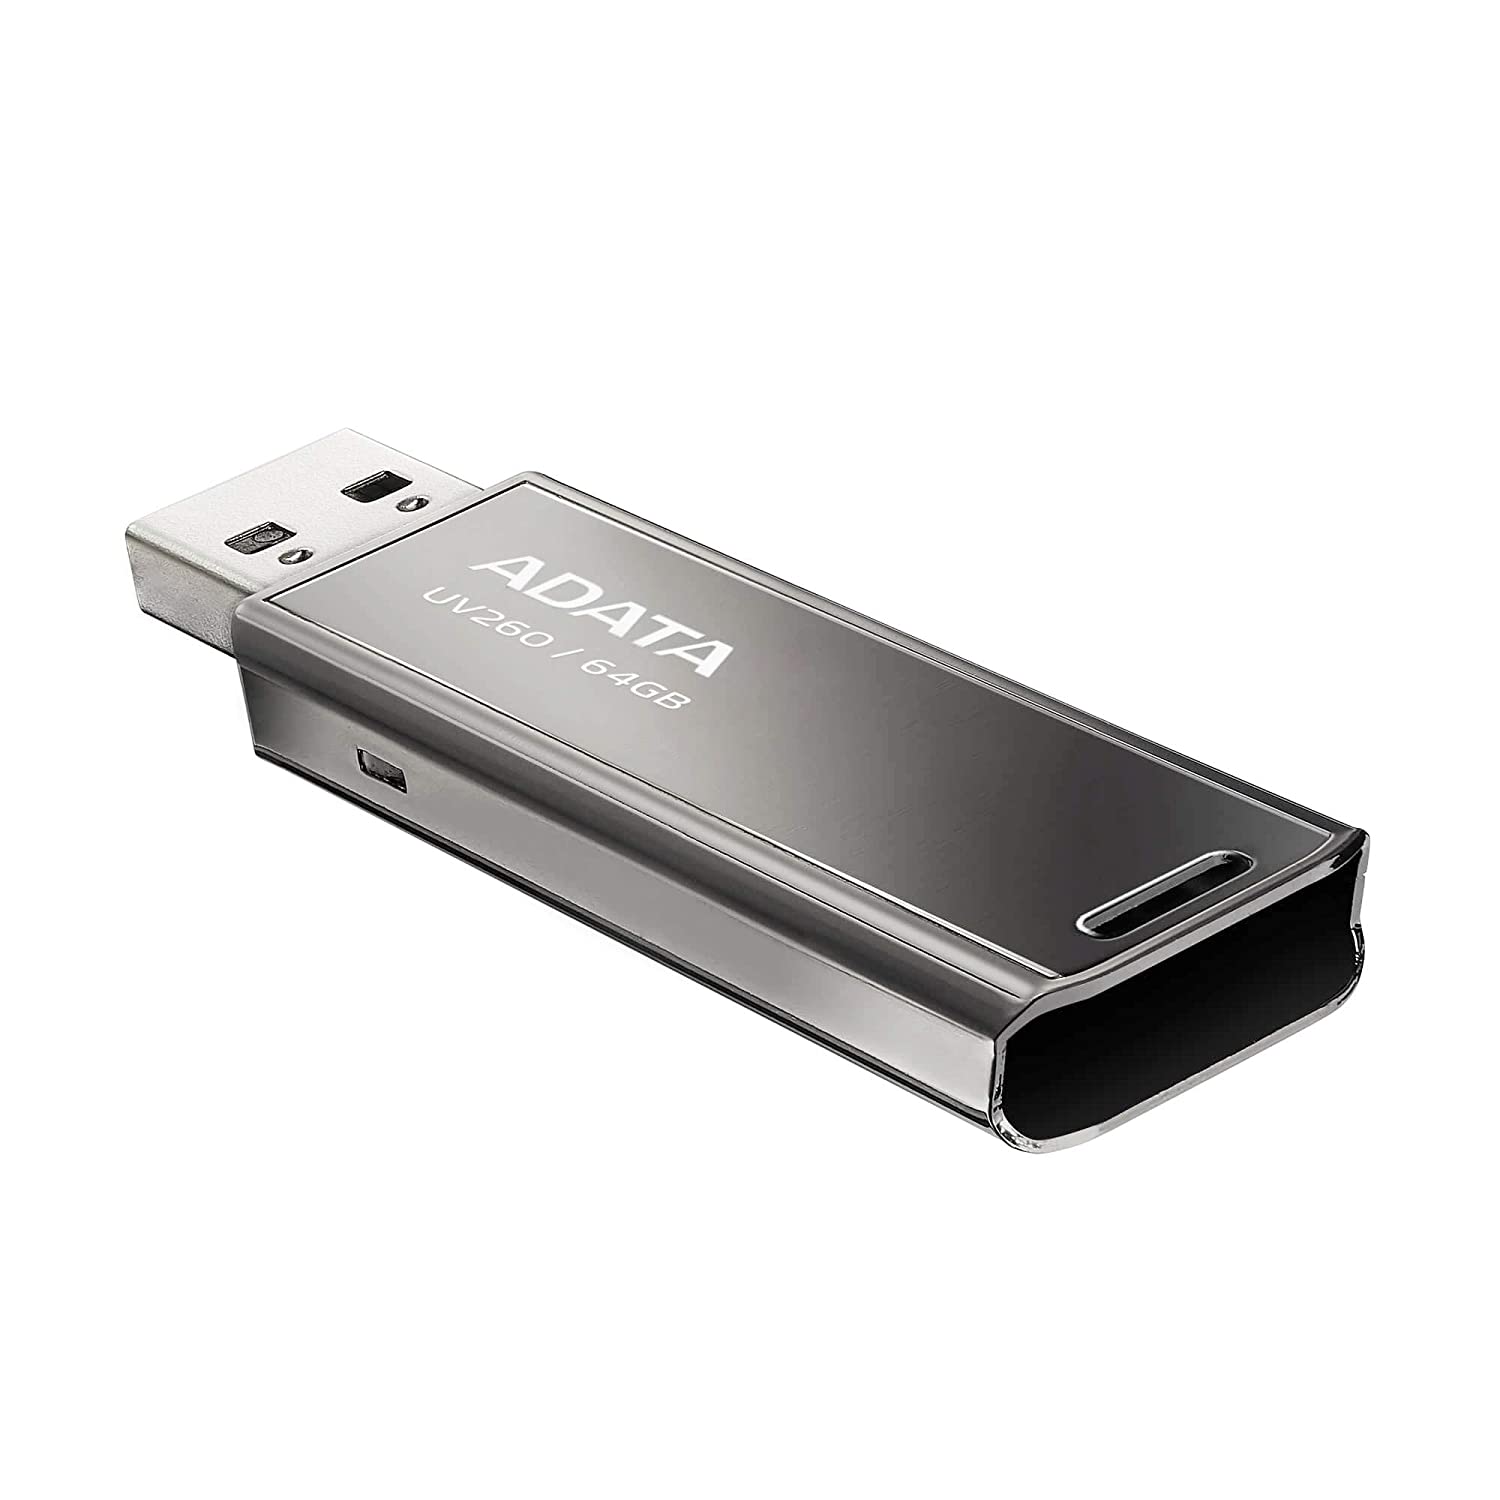 MEMORIA FLASH ADATA UV260 64GB USB 2.0 Capless METALICA